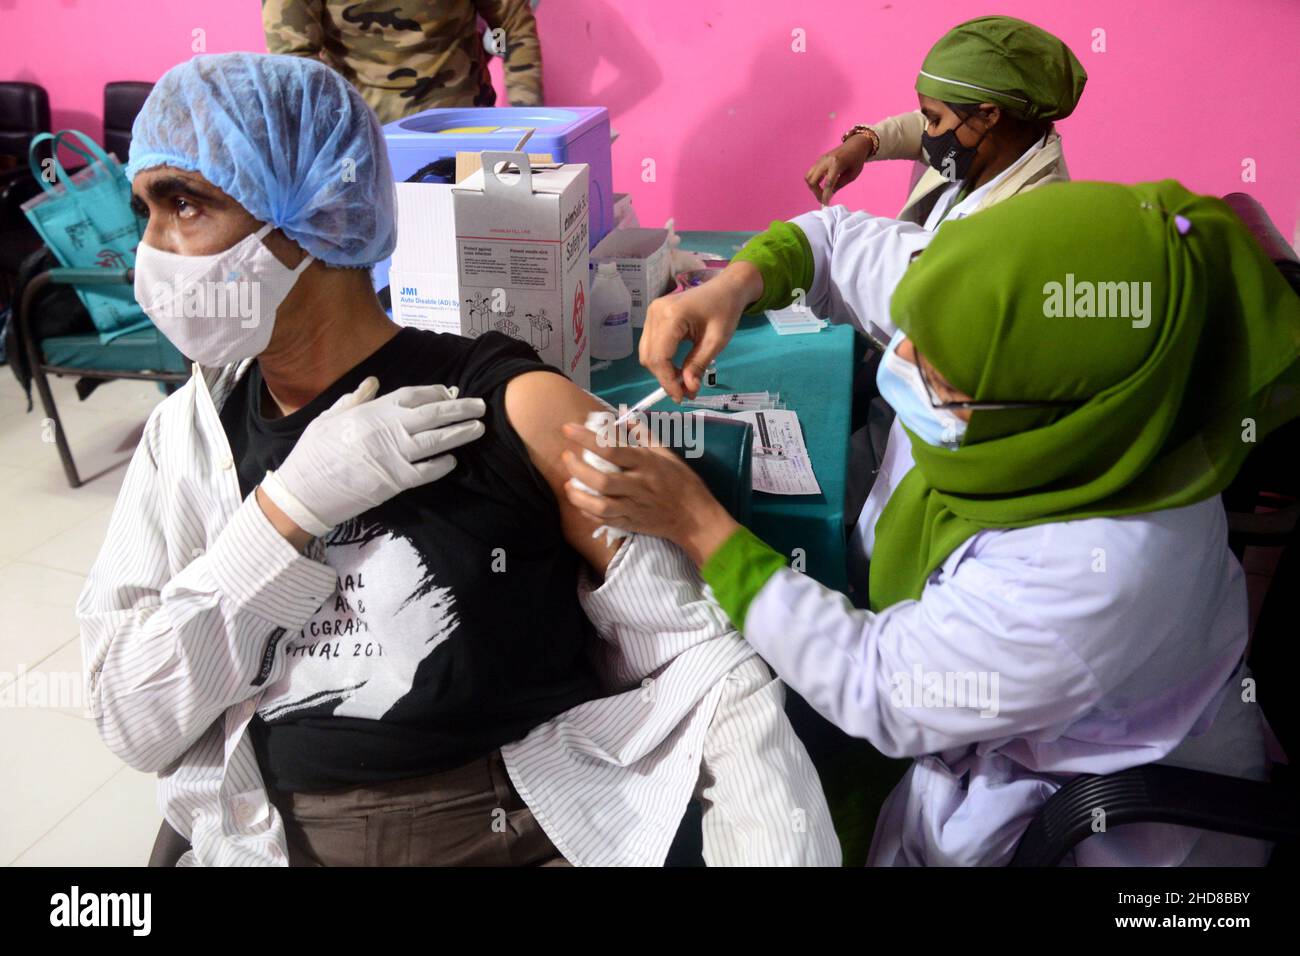 Le 3 janvier 2022, une personne reçoit une troisième dose du vaccin contre le coronavirus Pfizer-BioNTech COVID-19 à l'hôpital médical de Dhaka, à Dhaka, au Bangladesh Banque D'Images